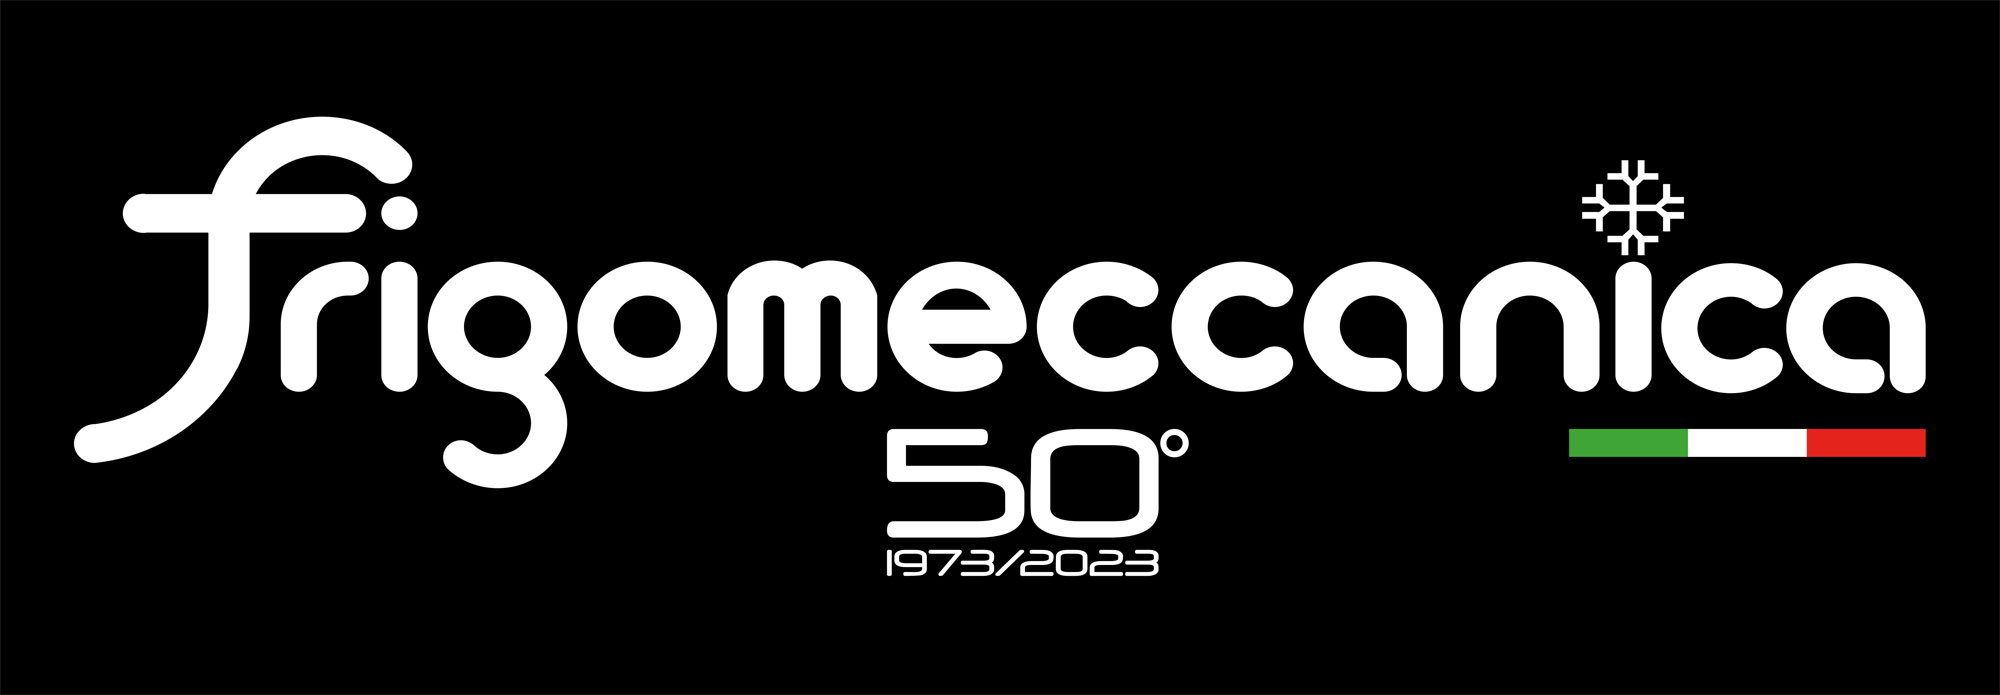 Frigomeccanica logo 50 anni